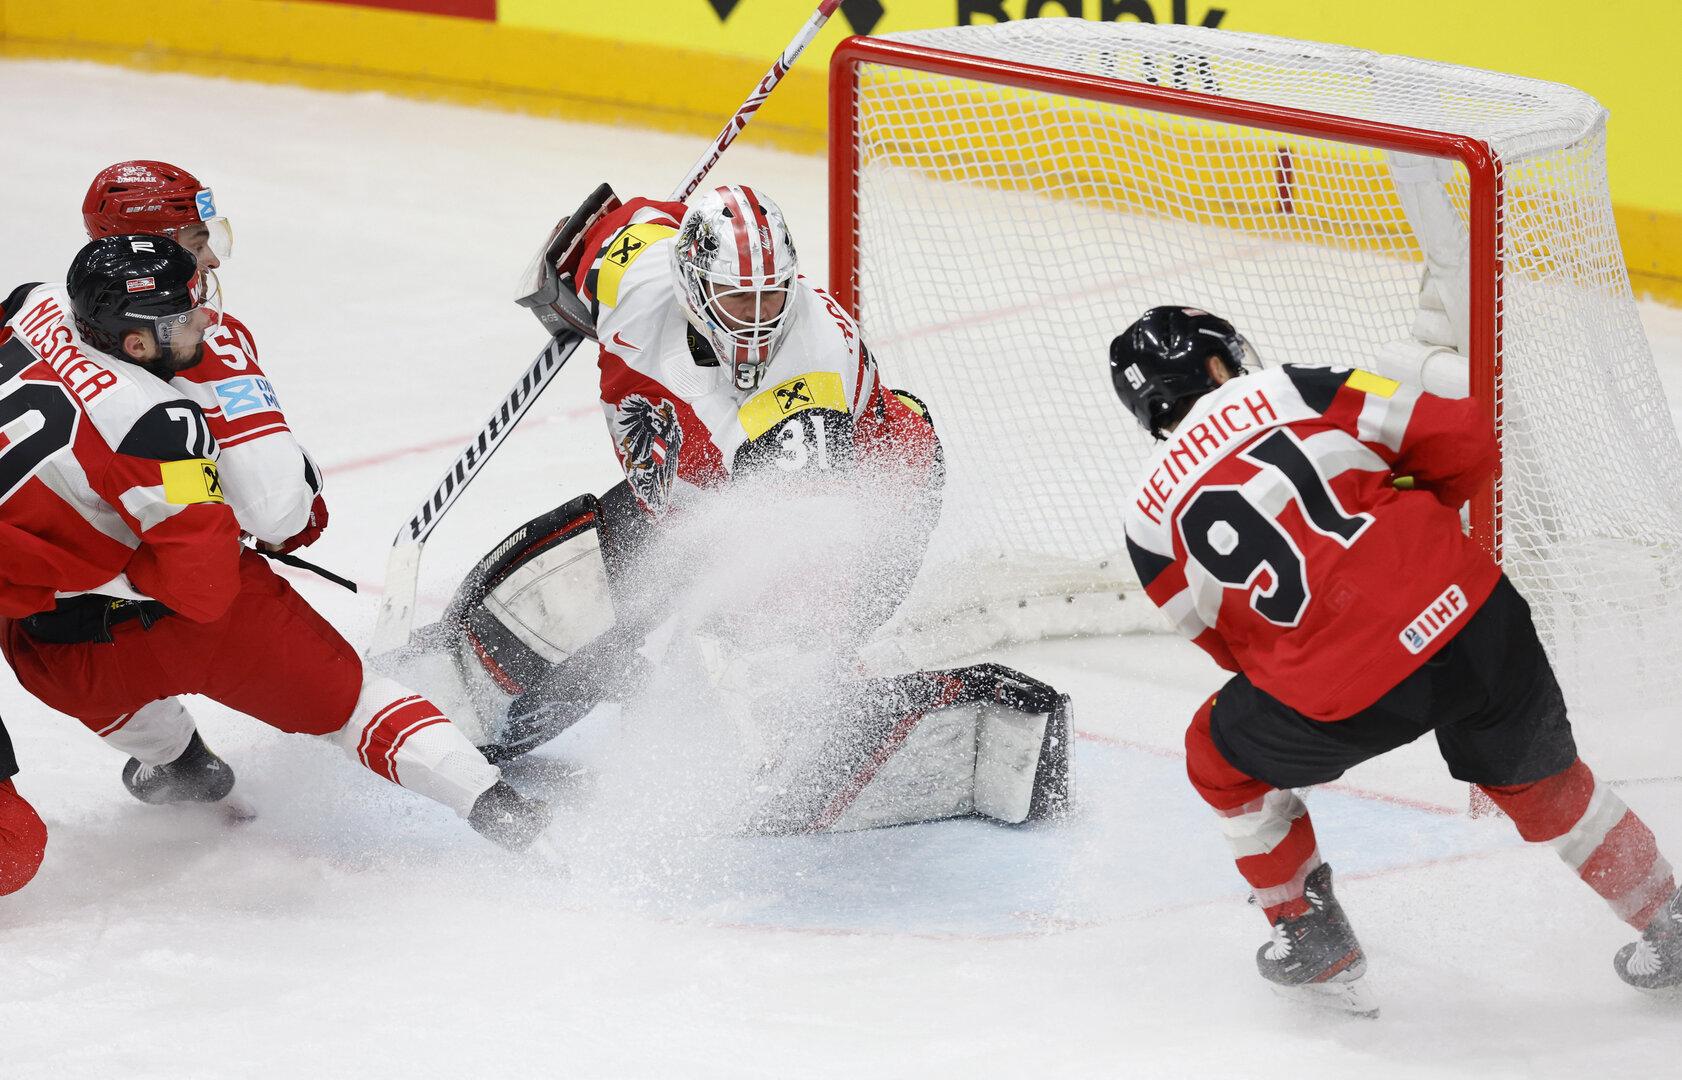 Österreichs Eishockey-Team enttäuschte zum Auftakt gegen Dänemark